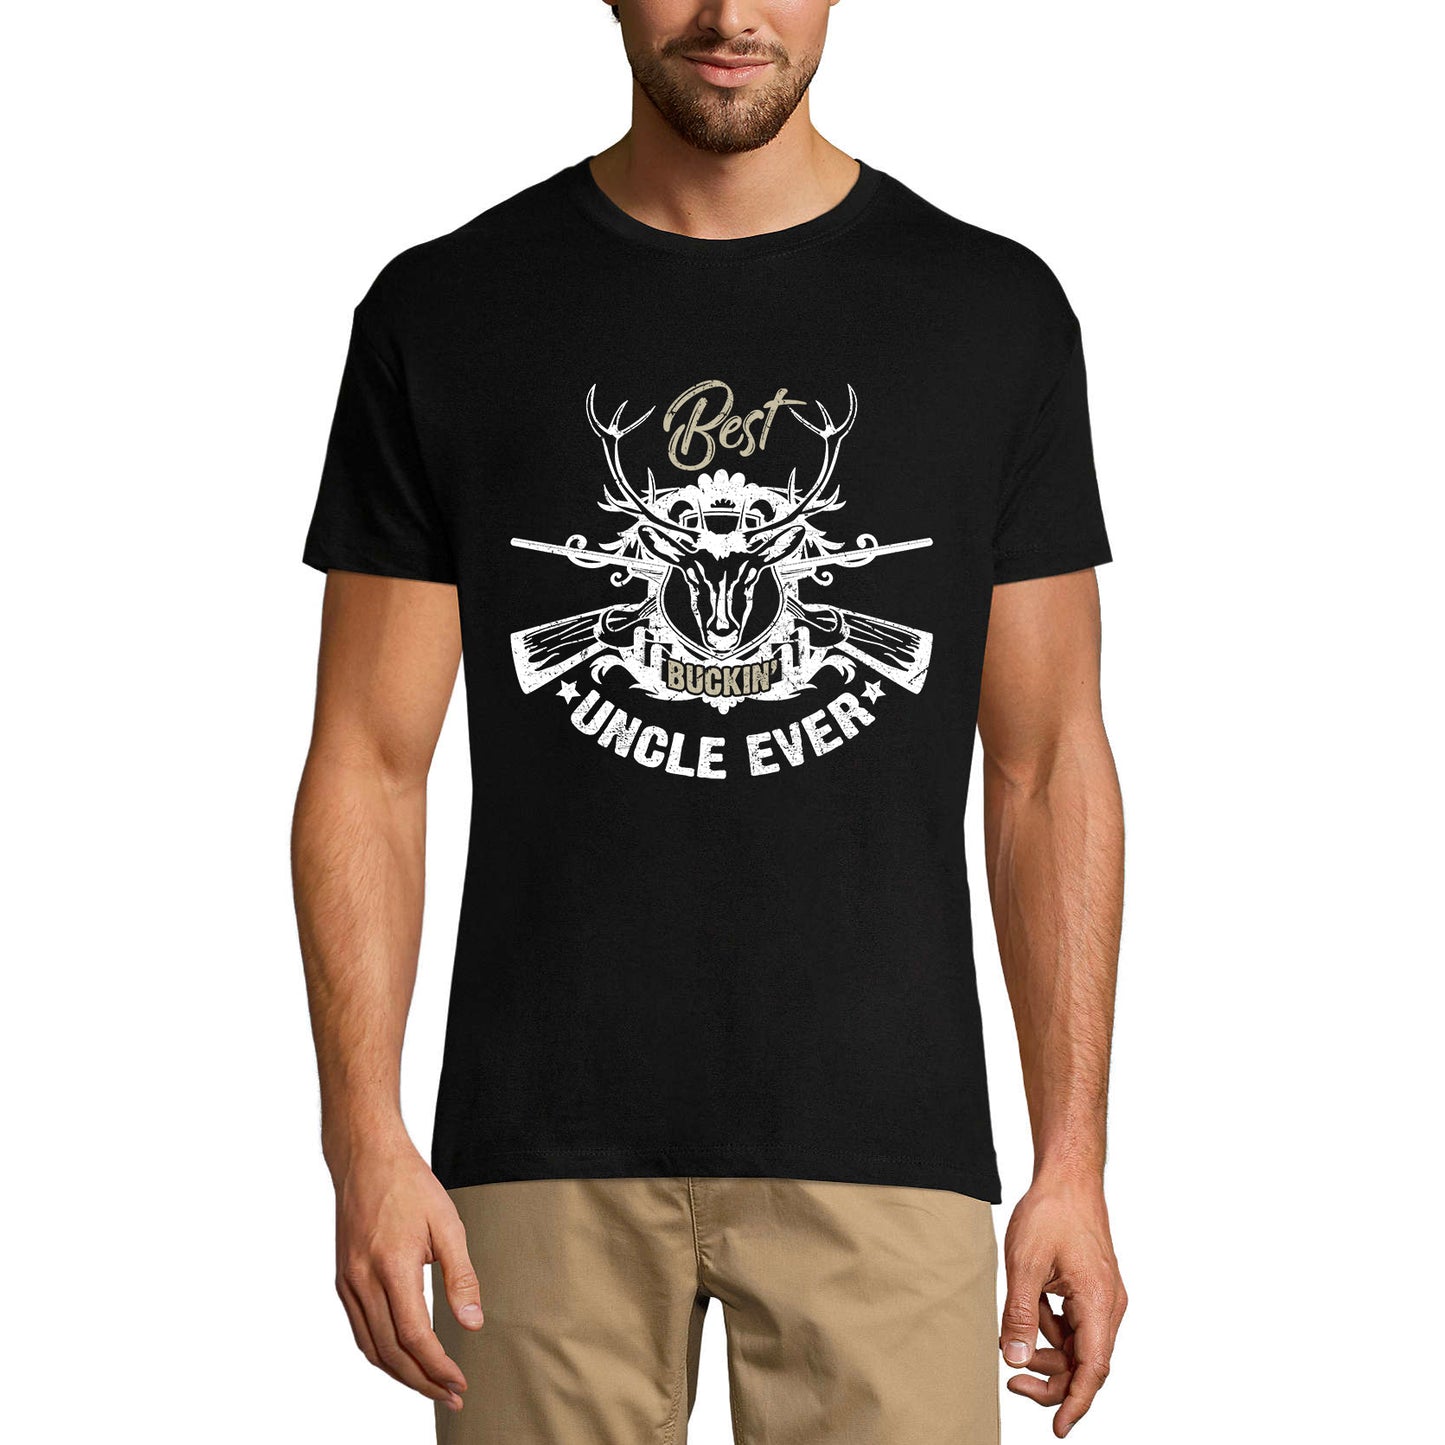 ULTRABASIC Men's T-Shirt Best Buckin Uncle Ever - Deer Hunter Tee Shirt